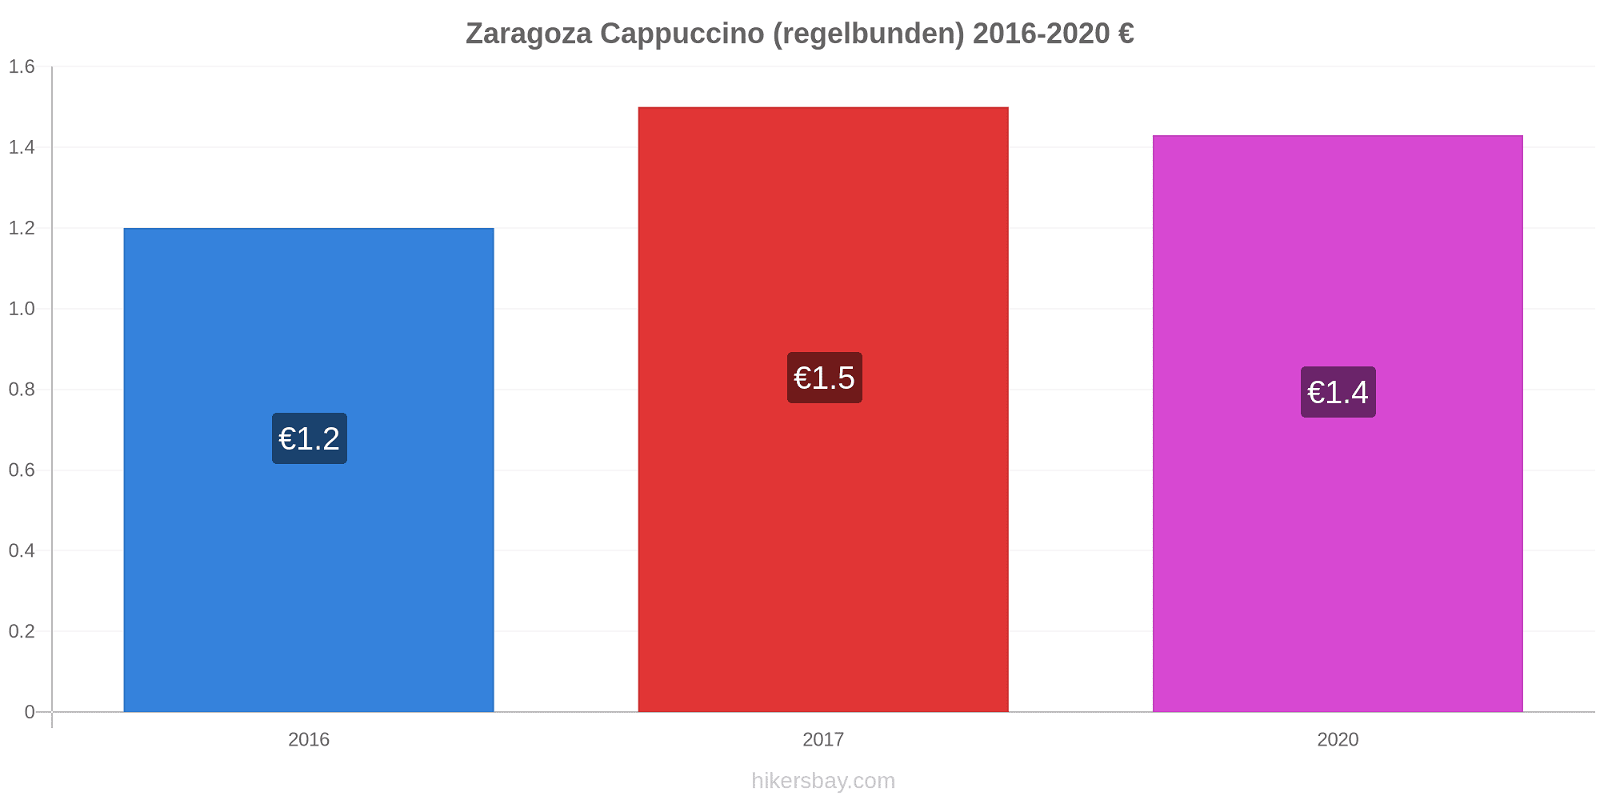 Zaragoza prisförändringar Cappuccino (regelbunden) hikersbay.com